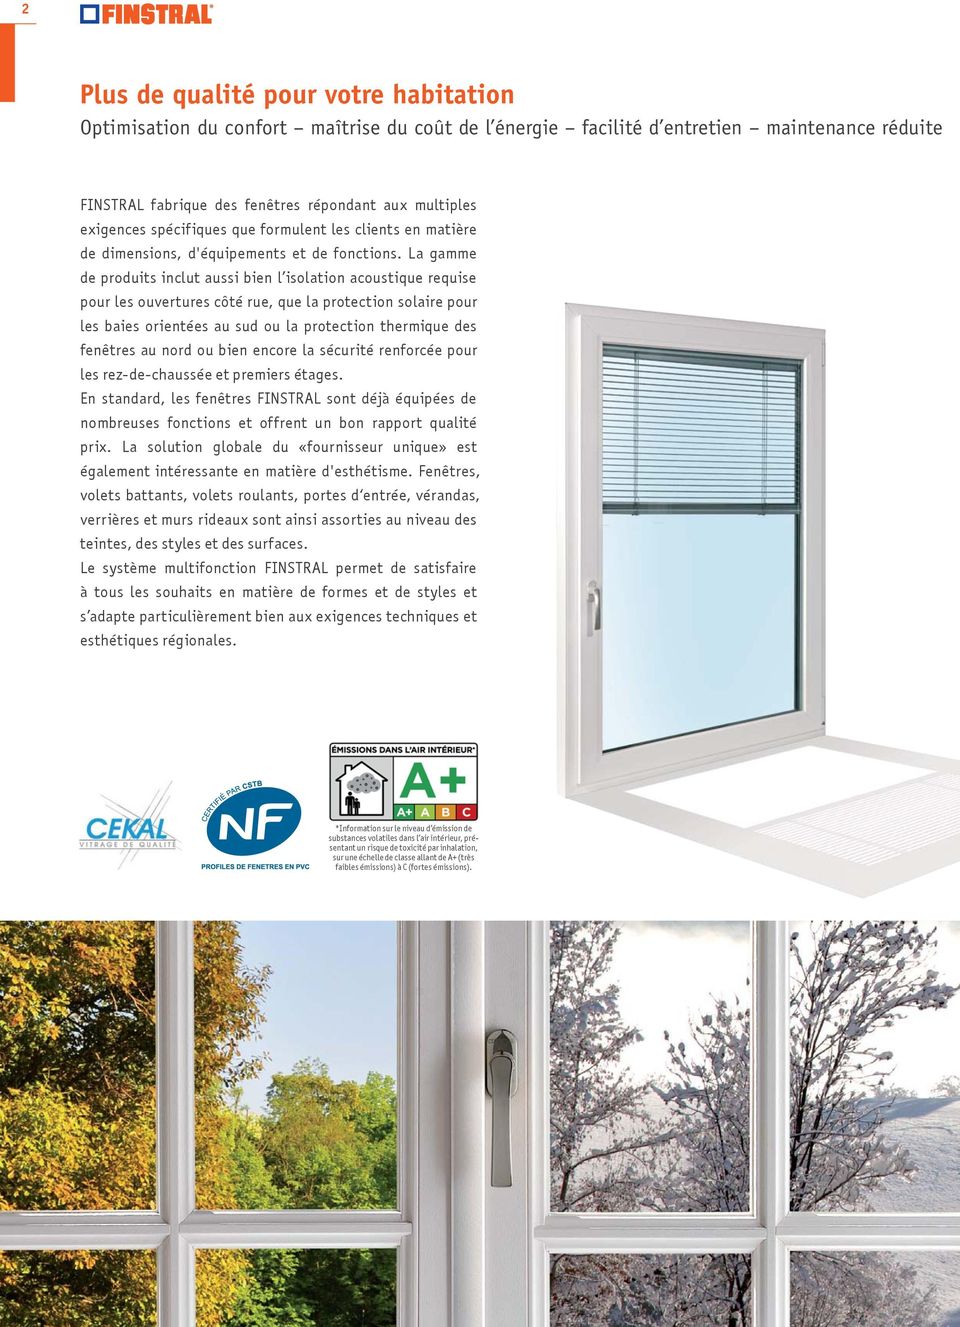 La gamme de produits inclut aussi bien l isolation acoustique requise pour les ouvertures côté rue, que la protection solaire pour les baies orientées au sud ou la protection thermique des fenêtres